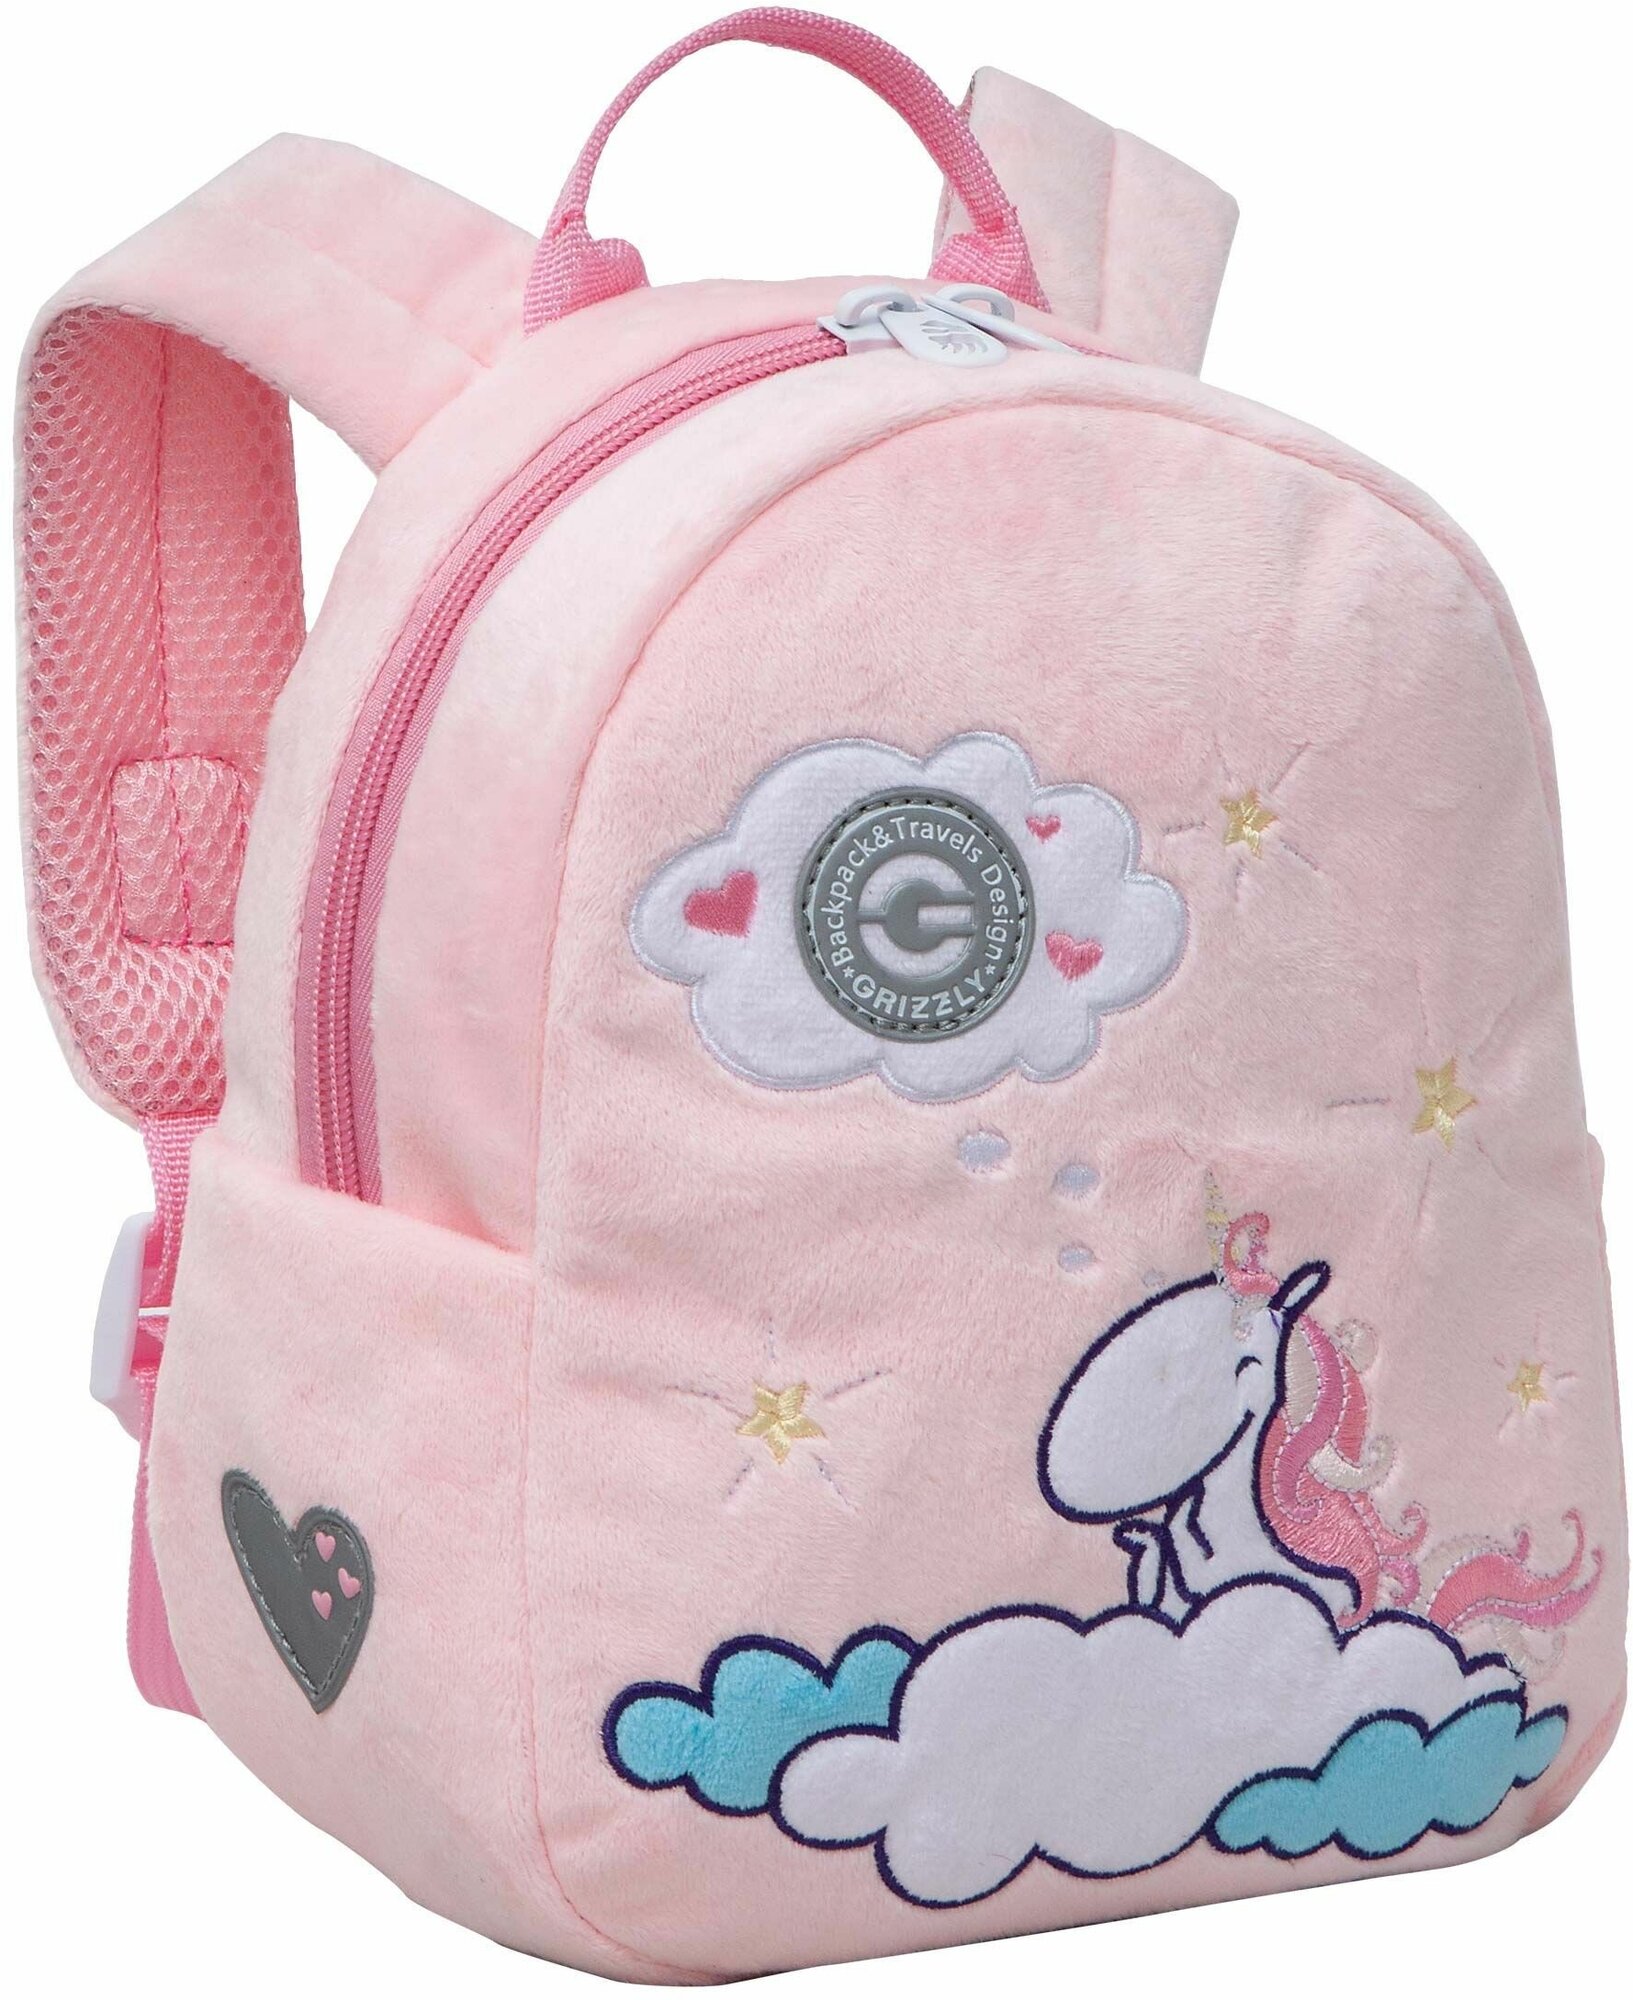 Рюкзак детский для девочки GRIZZLY, дошкольный, для малышей, в садик, с единорогом (розовый)